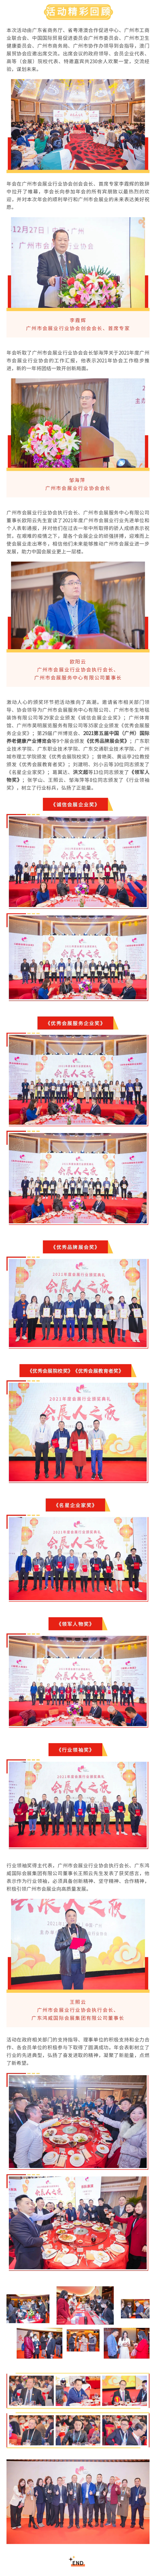 广州市会展业行业协会成立第十六周年年会暨颁奖典礼